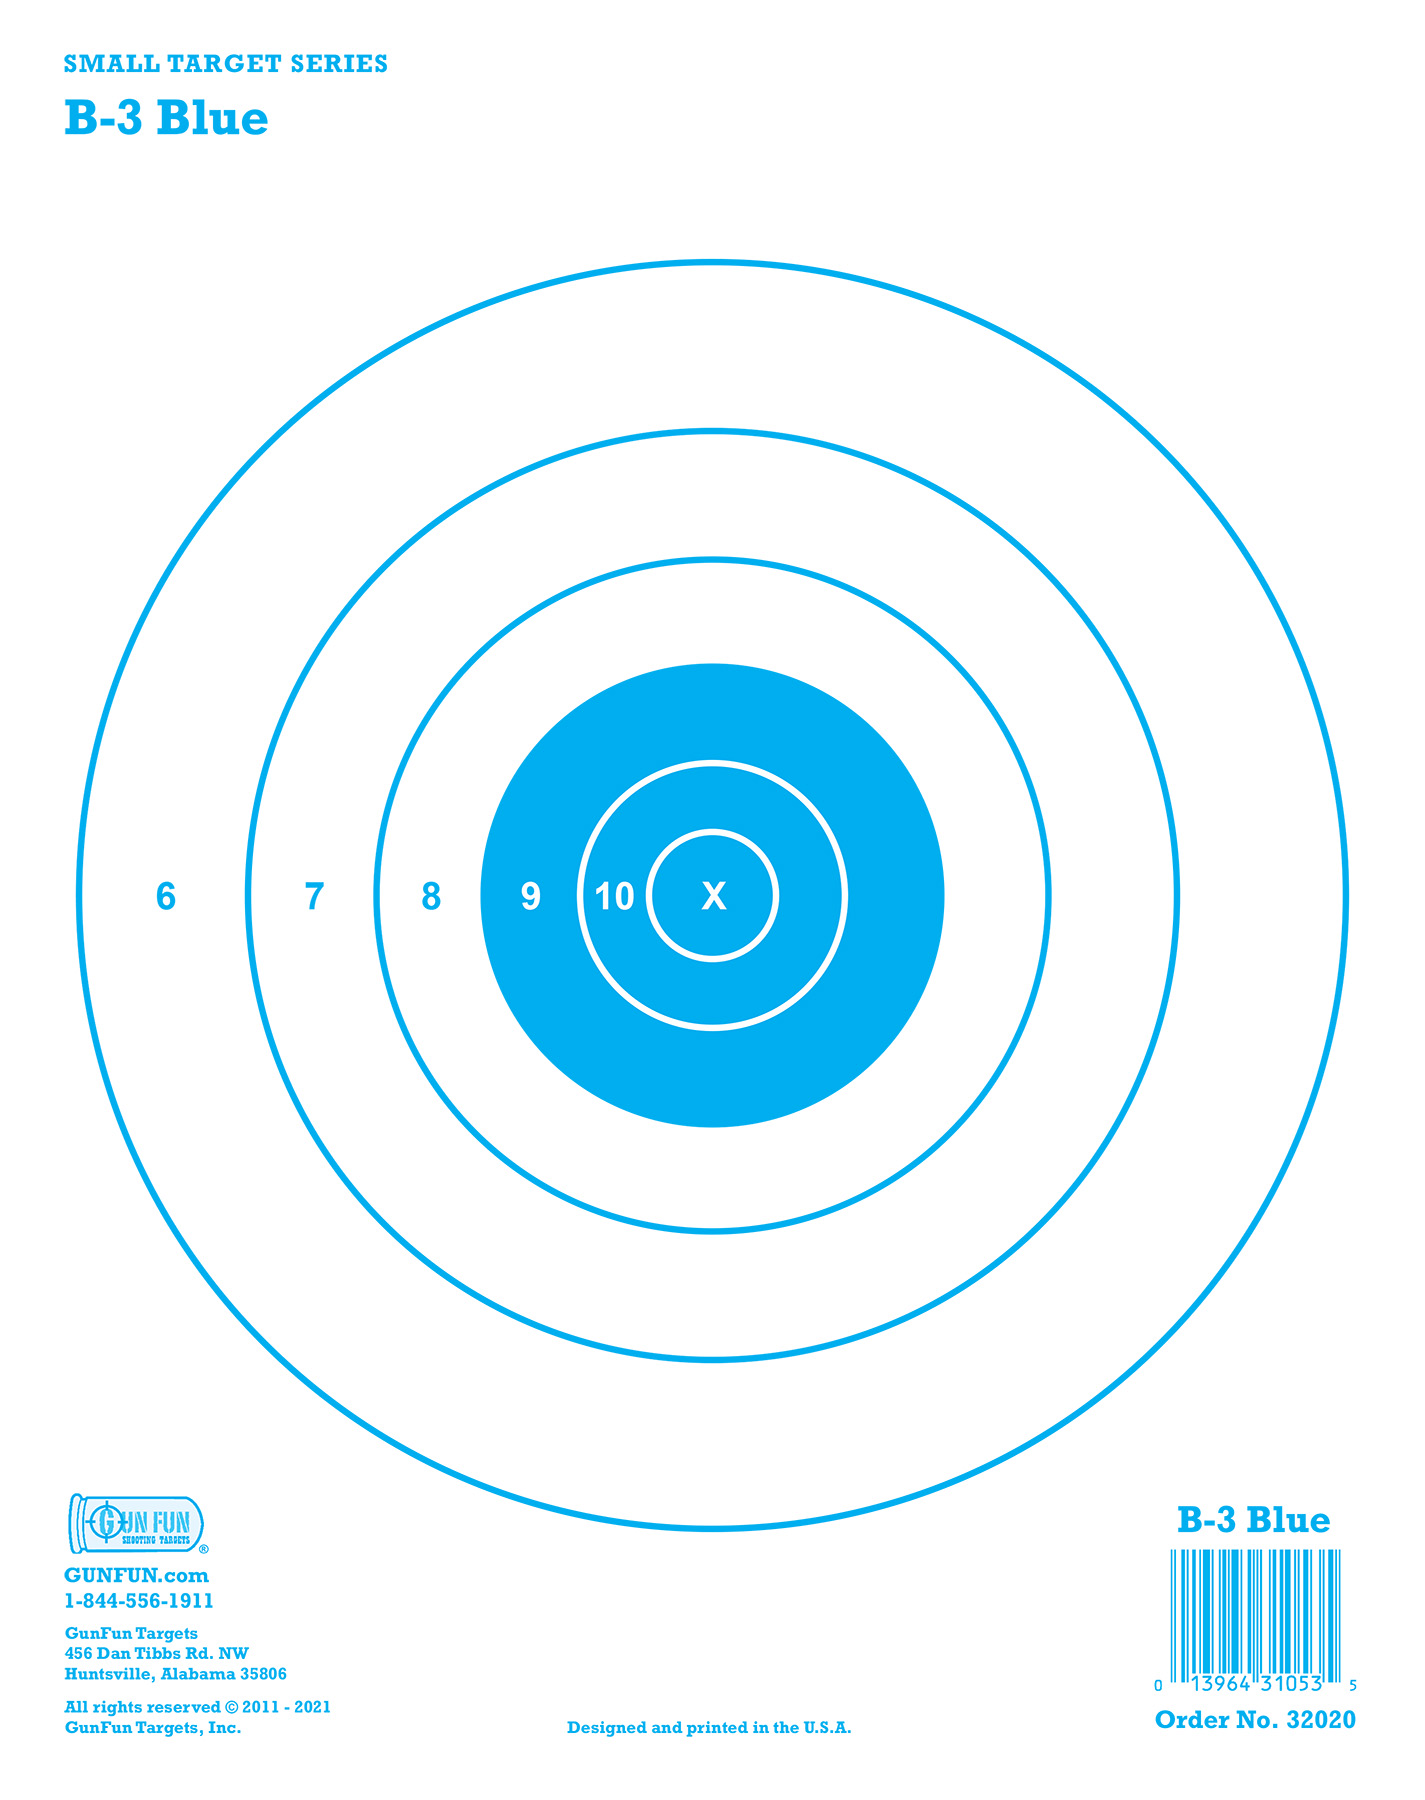 Target 101 (22400) | GunFun Targets Inc.